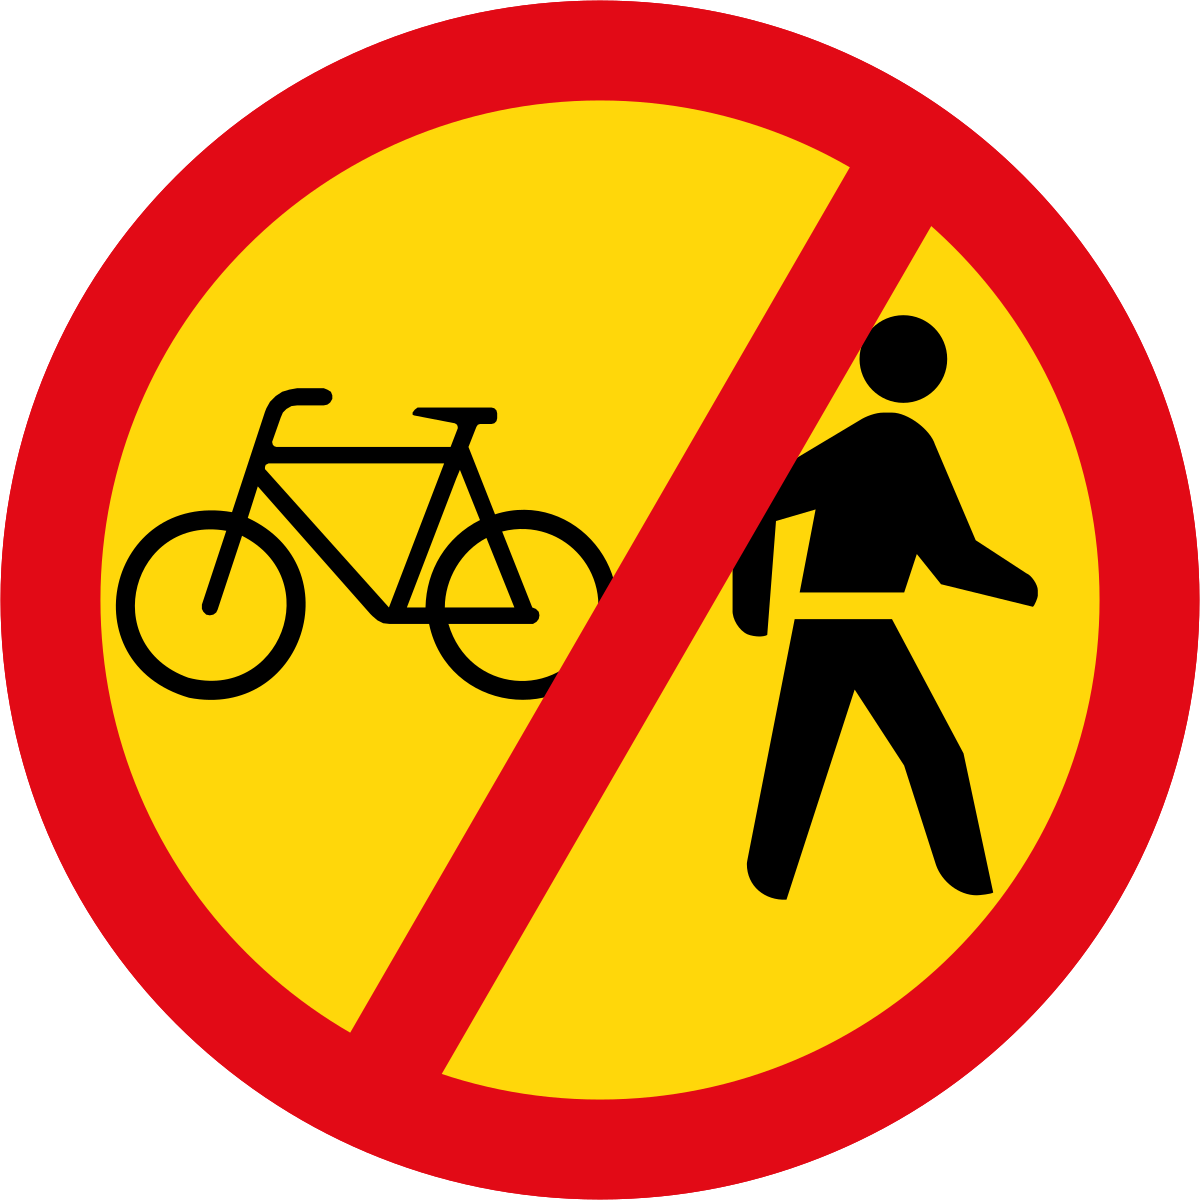 Велосипед в круге дорожный. Временные дорожные знаки. Временный дорожный знак. Дорожный знак стройка. Временные дорожные знаки на желтом фоне.